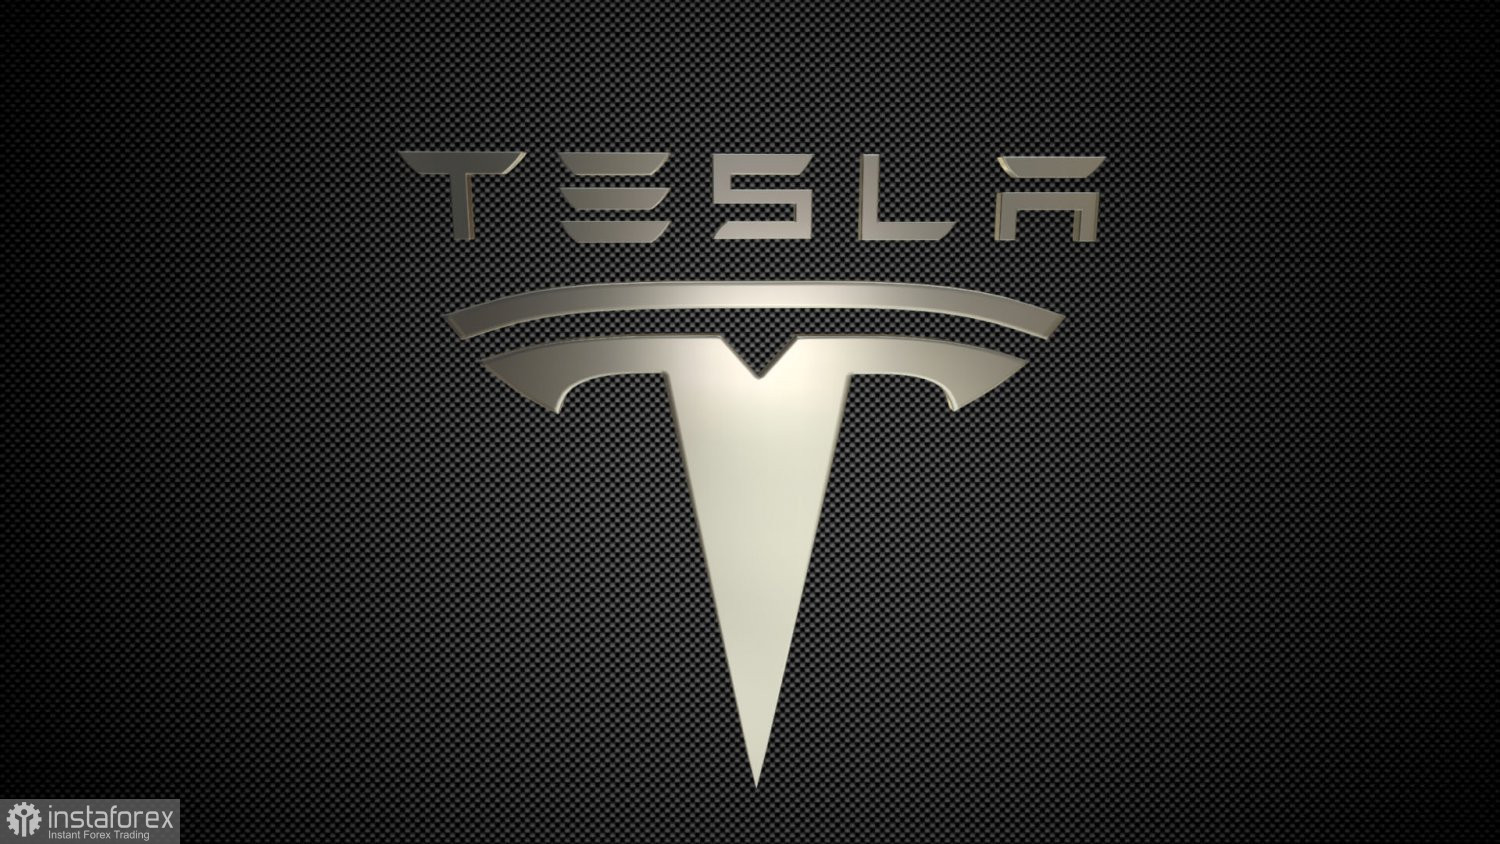 Заява Tesla спровокувала розпродаж акцій низки китайських компаній 